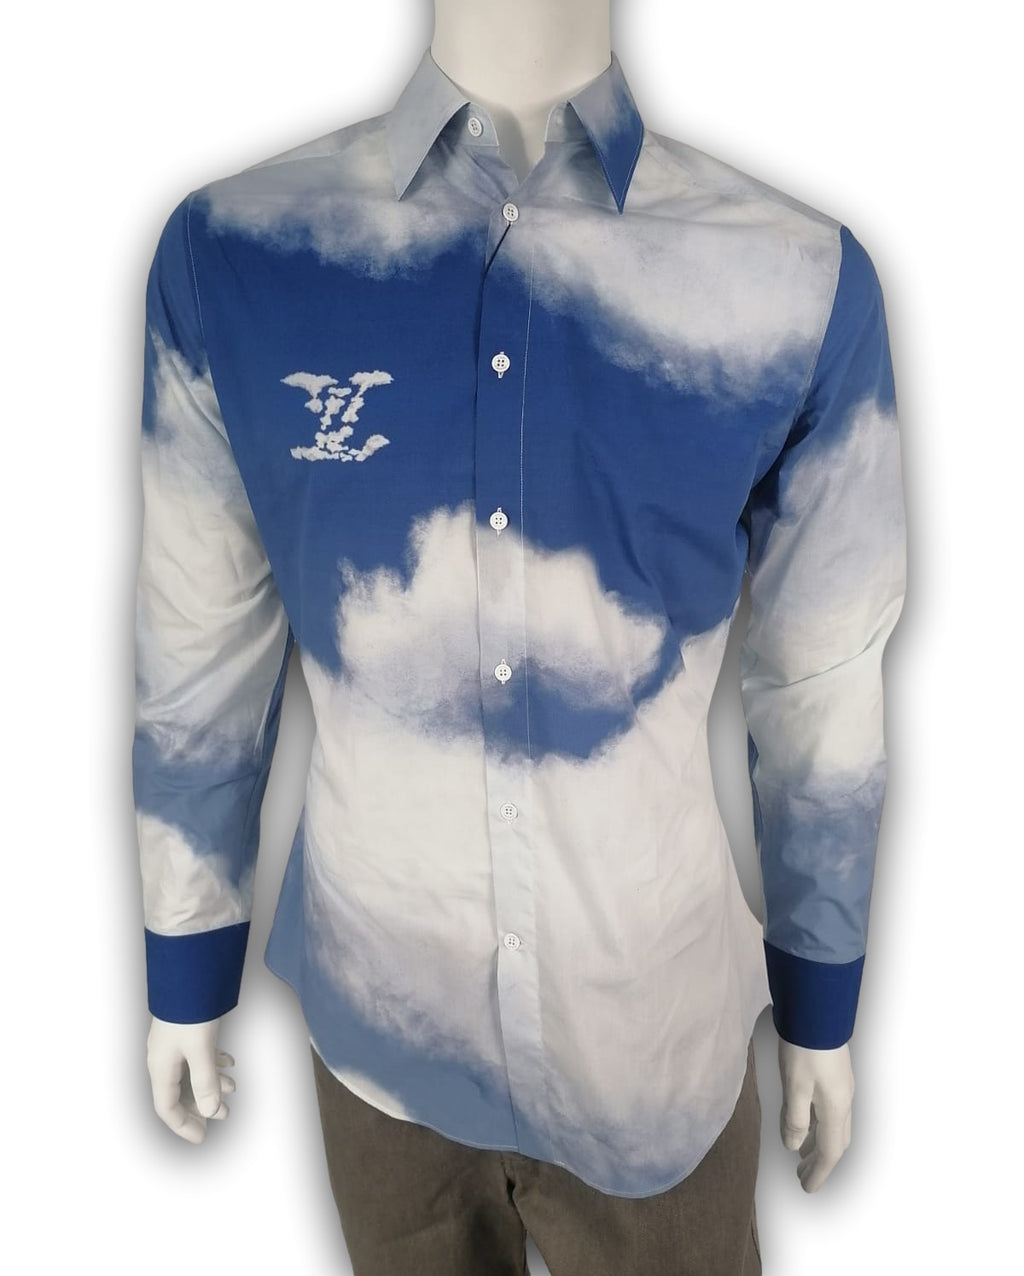 LOUIS VUITTON Cloud Logo T-Shirt XL Blue Authentic Men Used from Japan